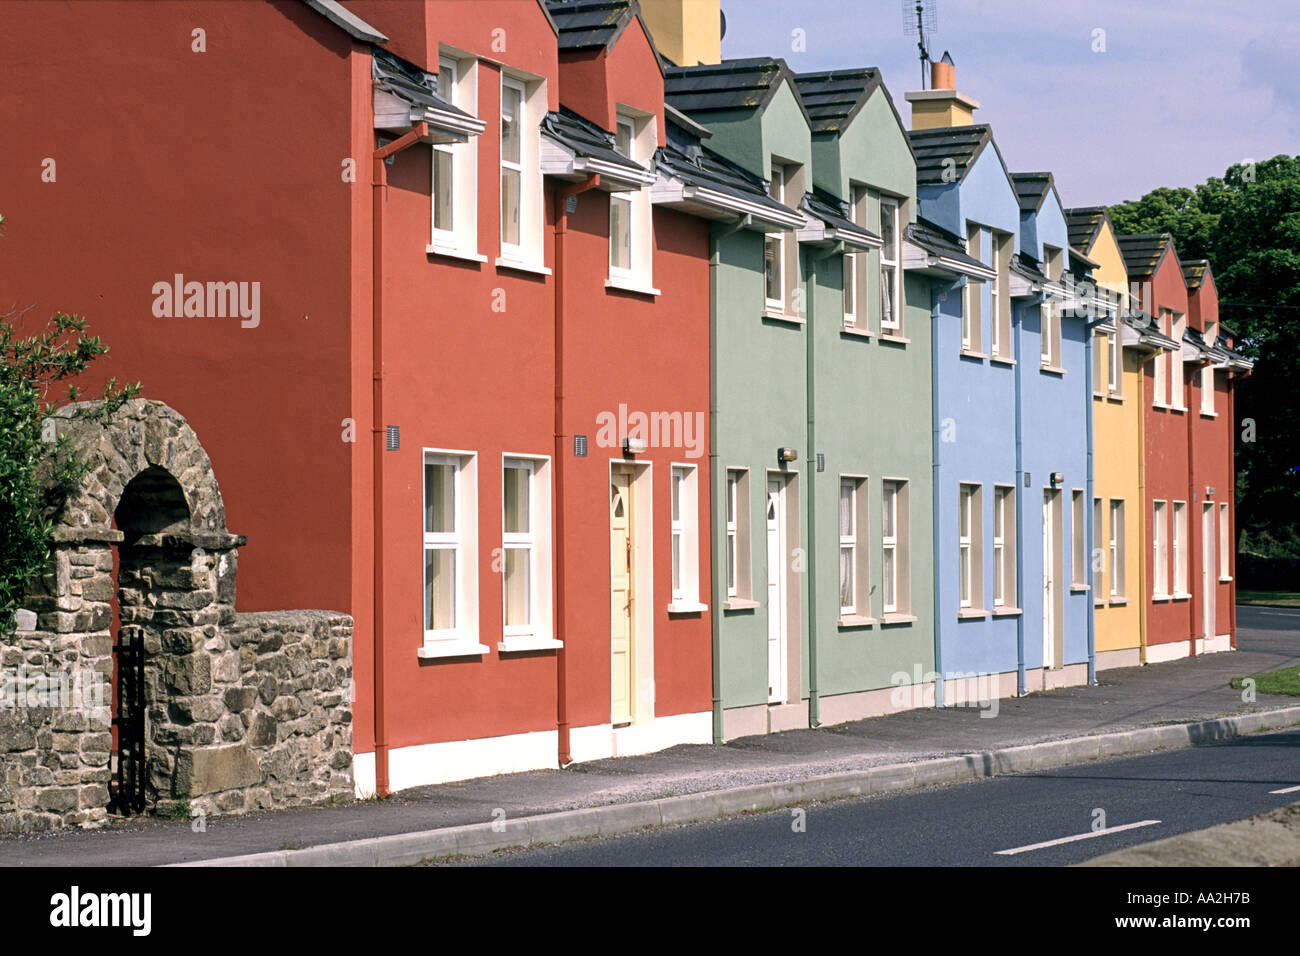 Une rangée de maisons colorées dans un petit village dans le comté d'Offaly, Irlande. Banque D'Images